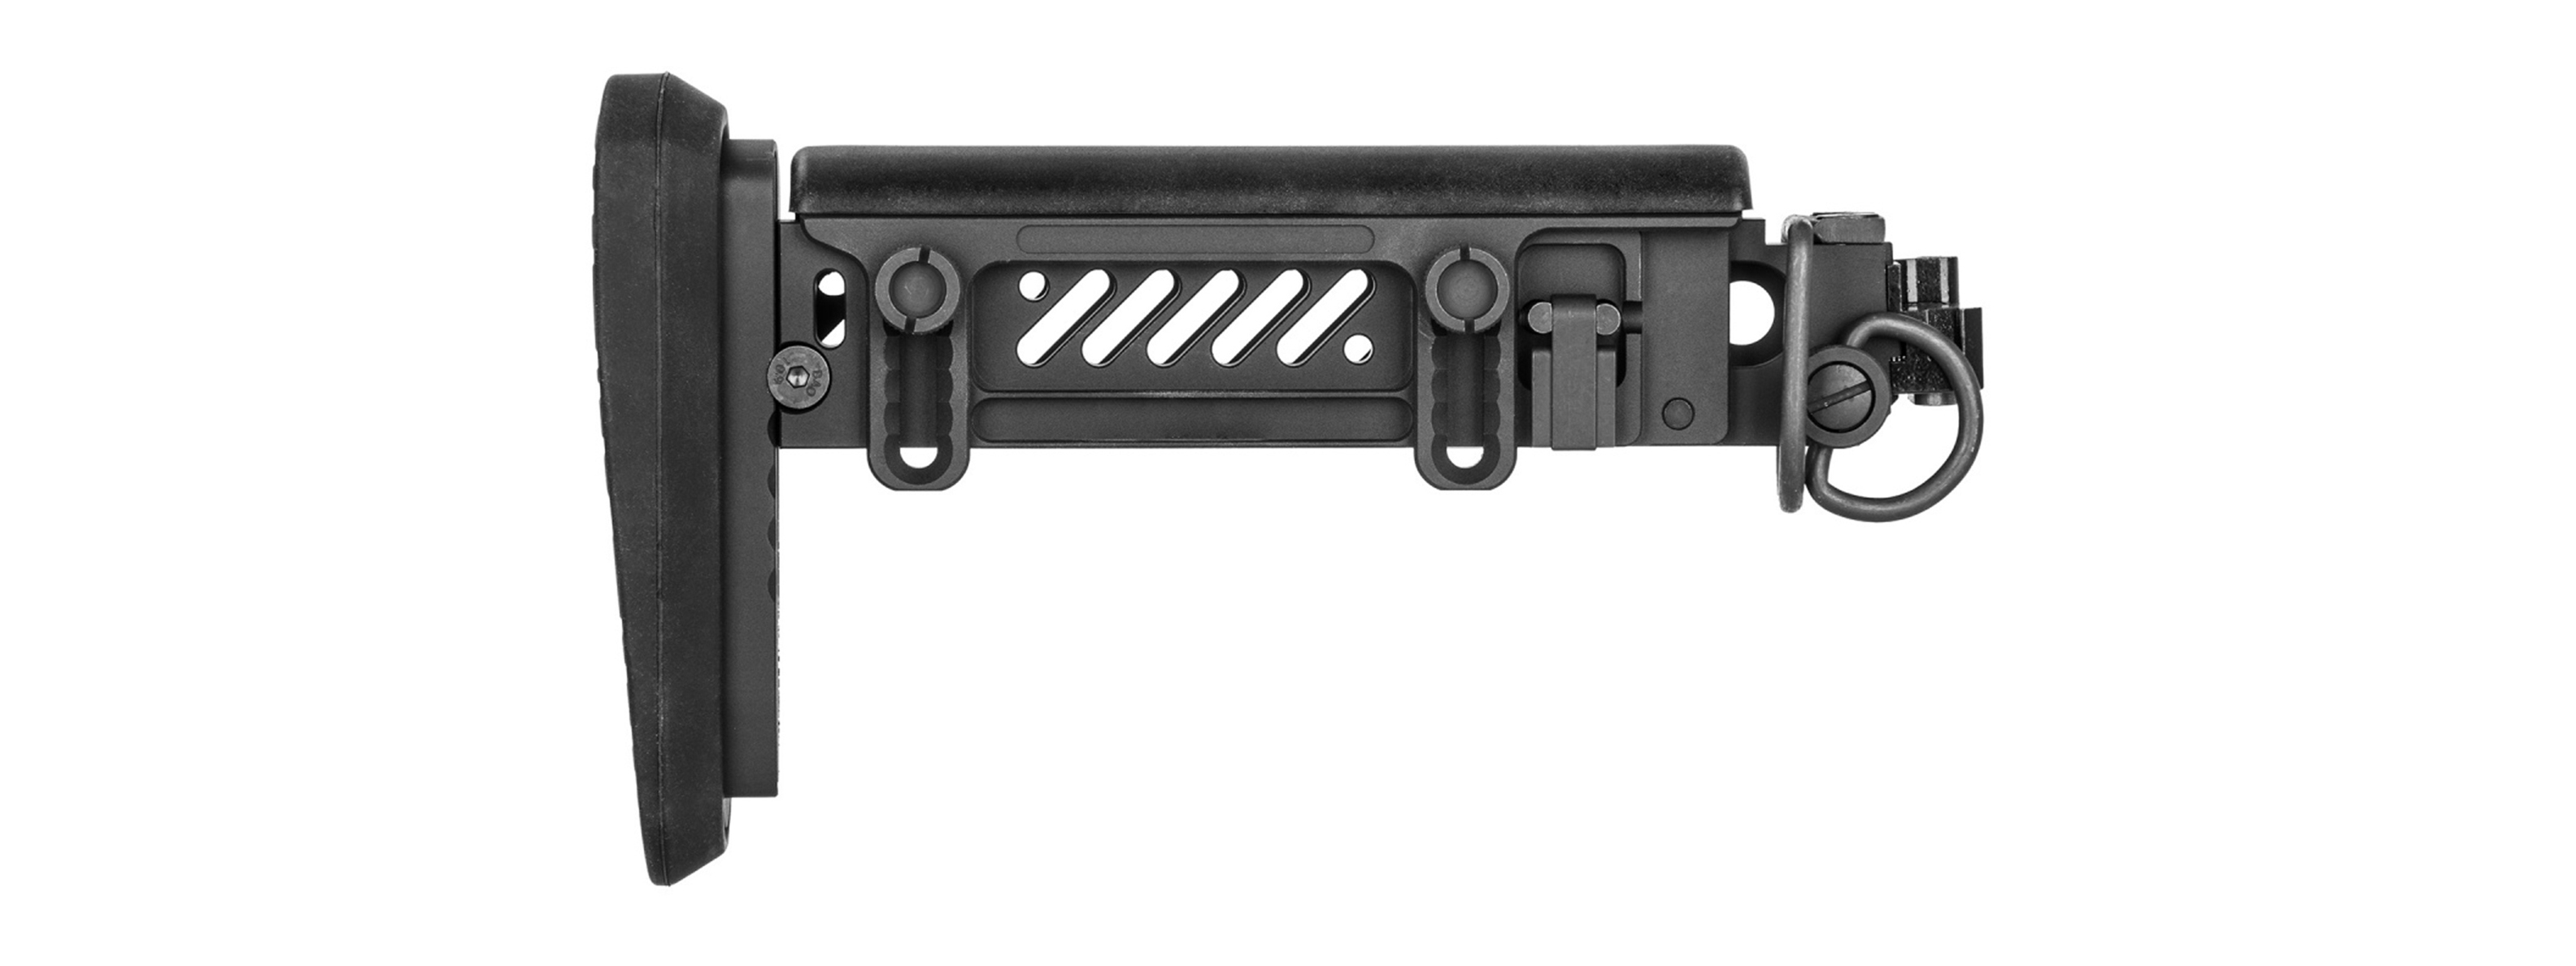 5KU PT-1 AK Side Folding Stock for E&L AK (Gen 2)